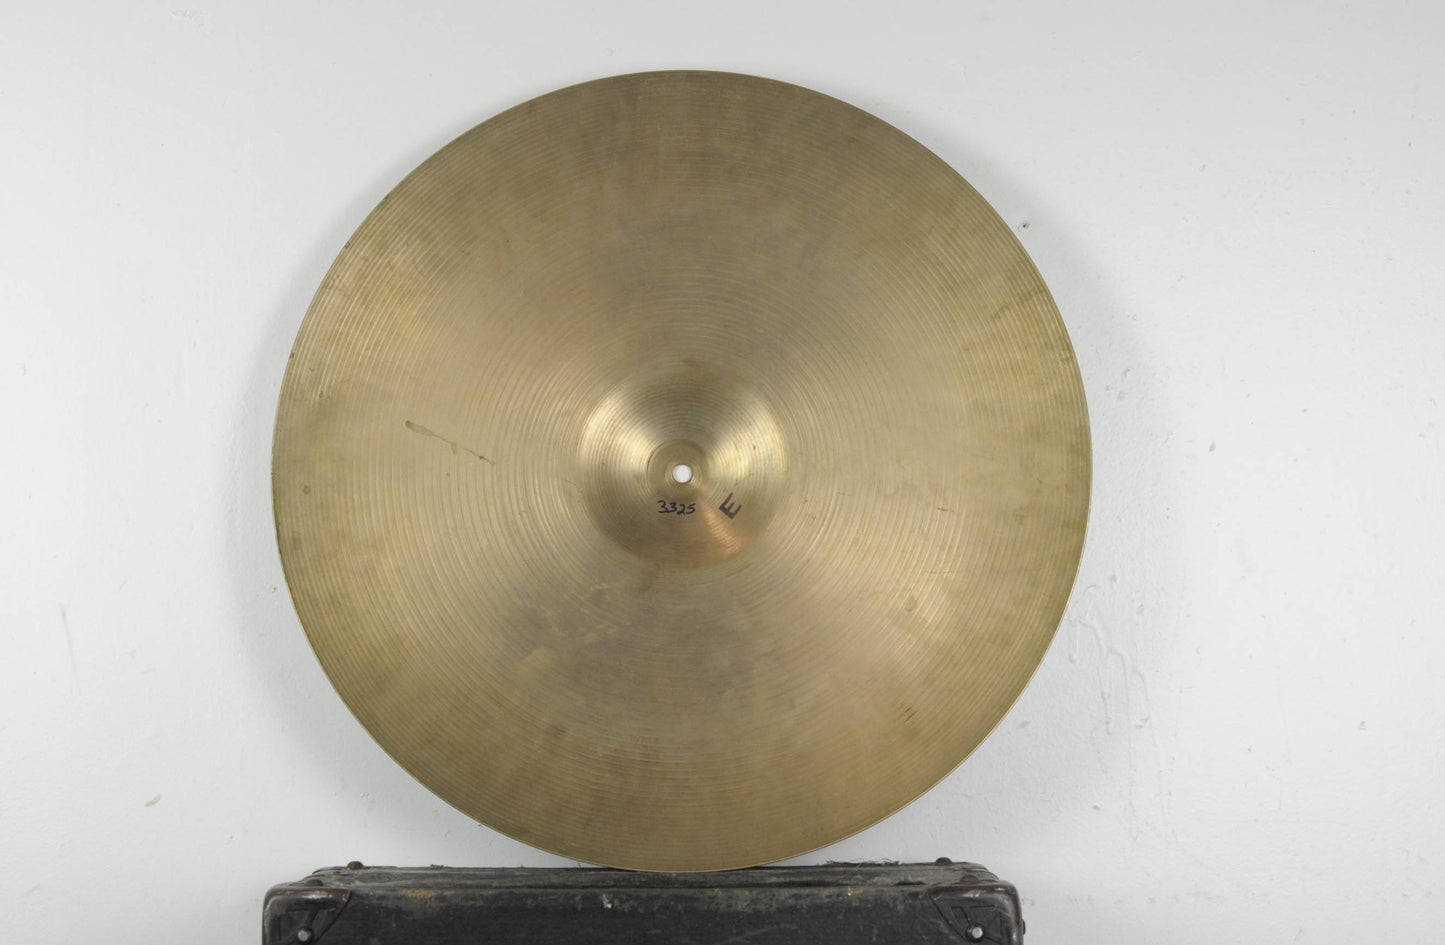 1960s Zildjian A 22" Ride Cymbal 3325g